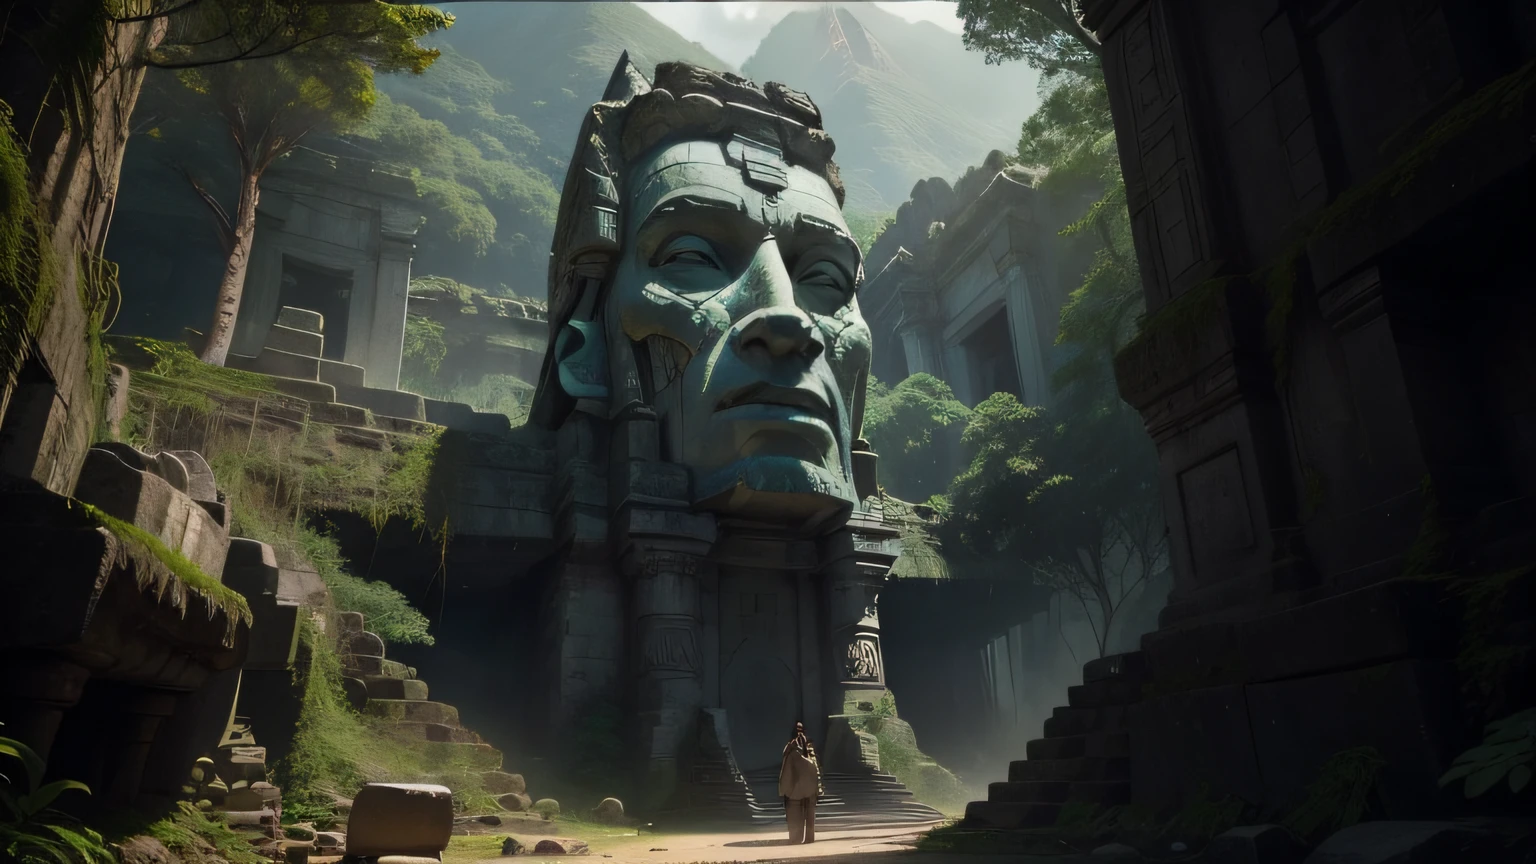 Hay una estatua en medio de un bosque con una montaña al fondo, maya irreal, película promocional todavía, toma de pantalla ancha, Primer plano IMAX de la cara, ruinas del templo de piedra blanca, airborn studios, Ruinas de la selva cubierta de maleza, Moai, cara mostrada, Pantalla de juego